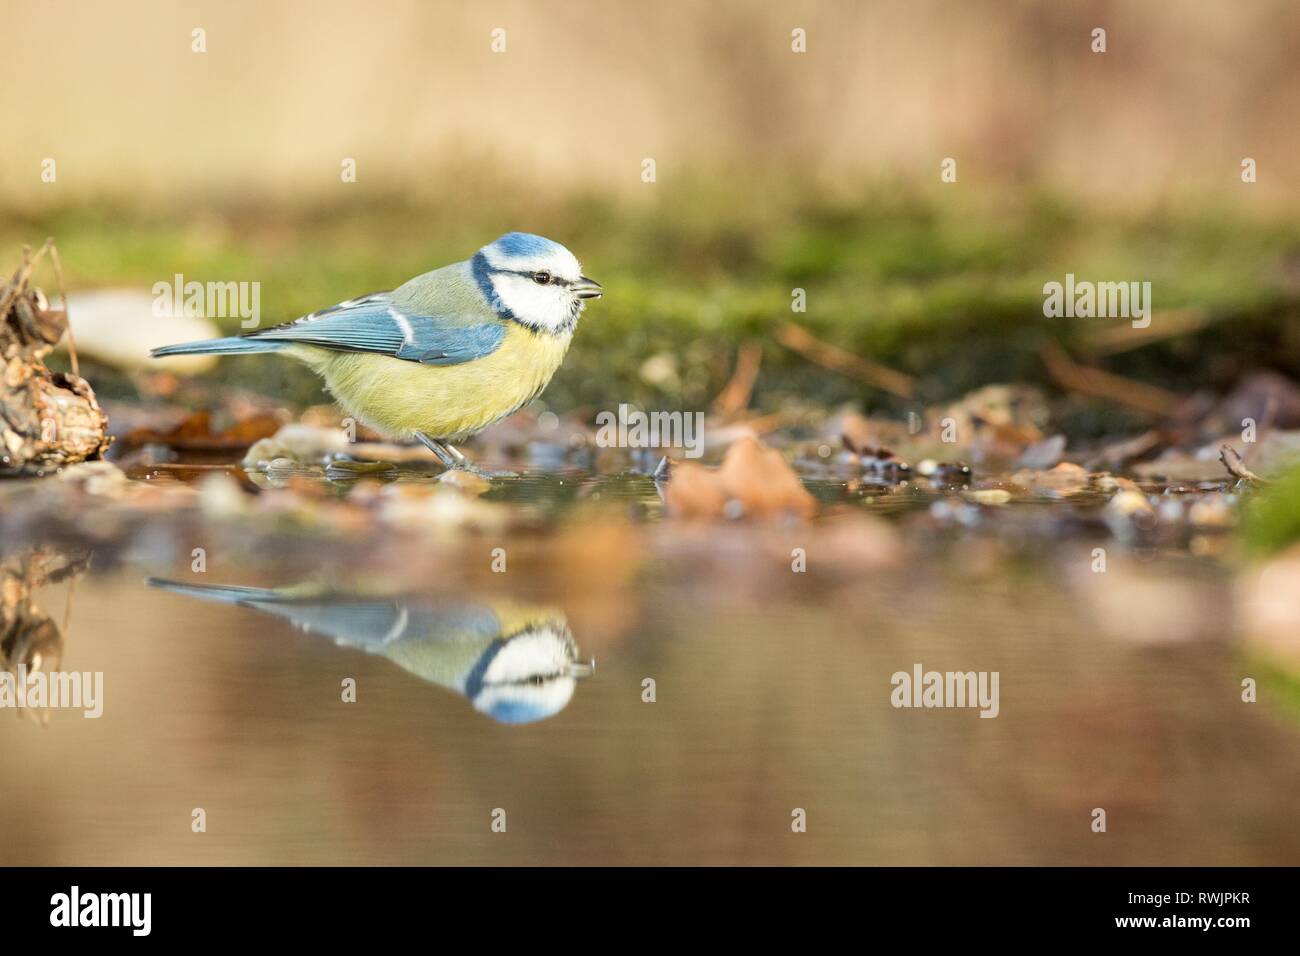 Blue Tit assis sur la rive de l'eau étang de lichen en forêt avec l'arrière-plan flou et les couleurs saturées, la République tchèque, l'oiseau reflète dans l'eau, Songbird Banque D'Images